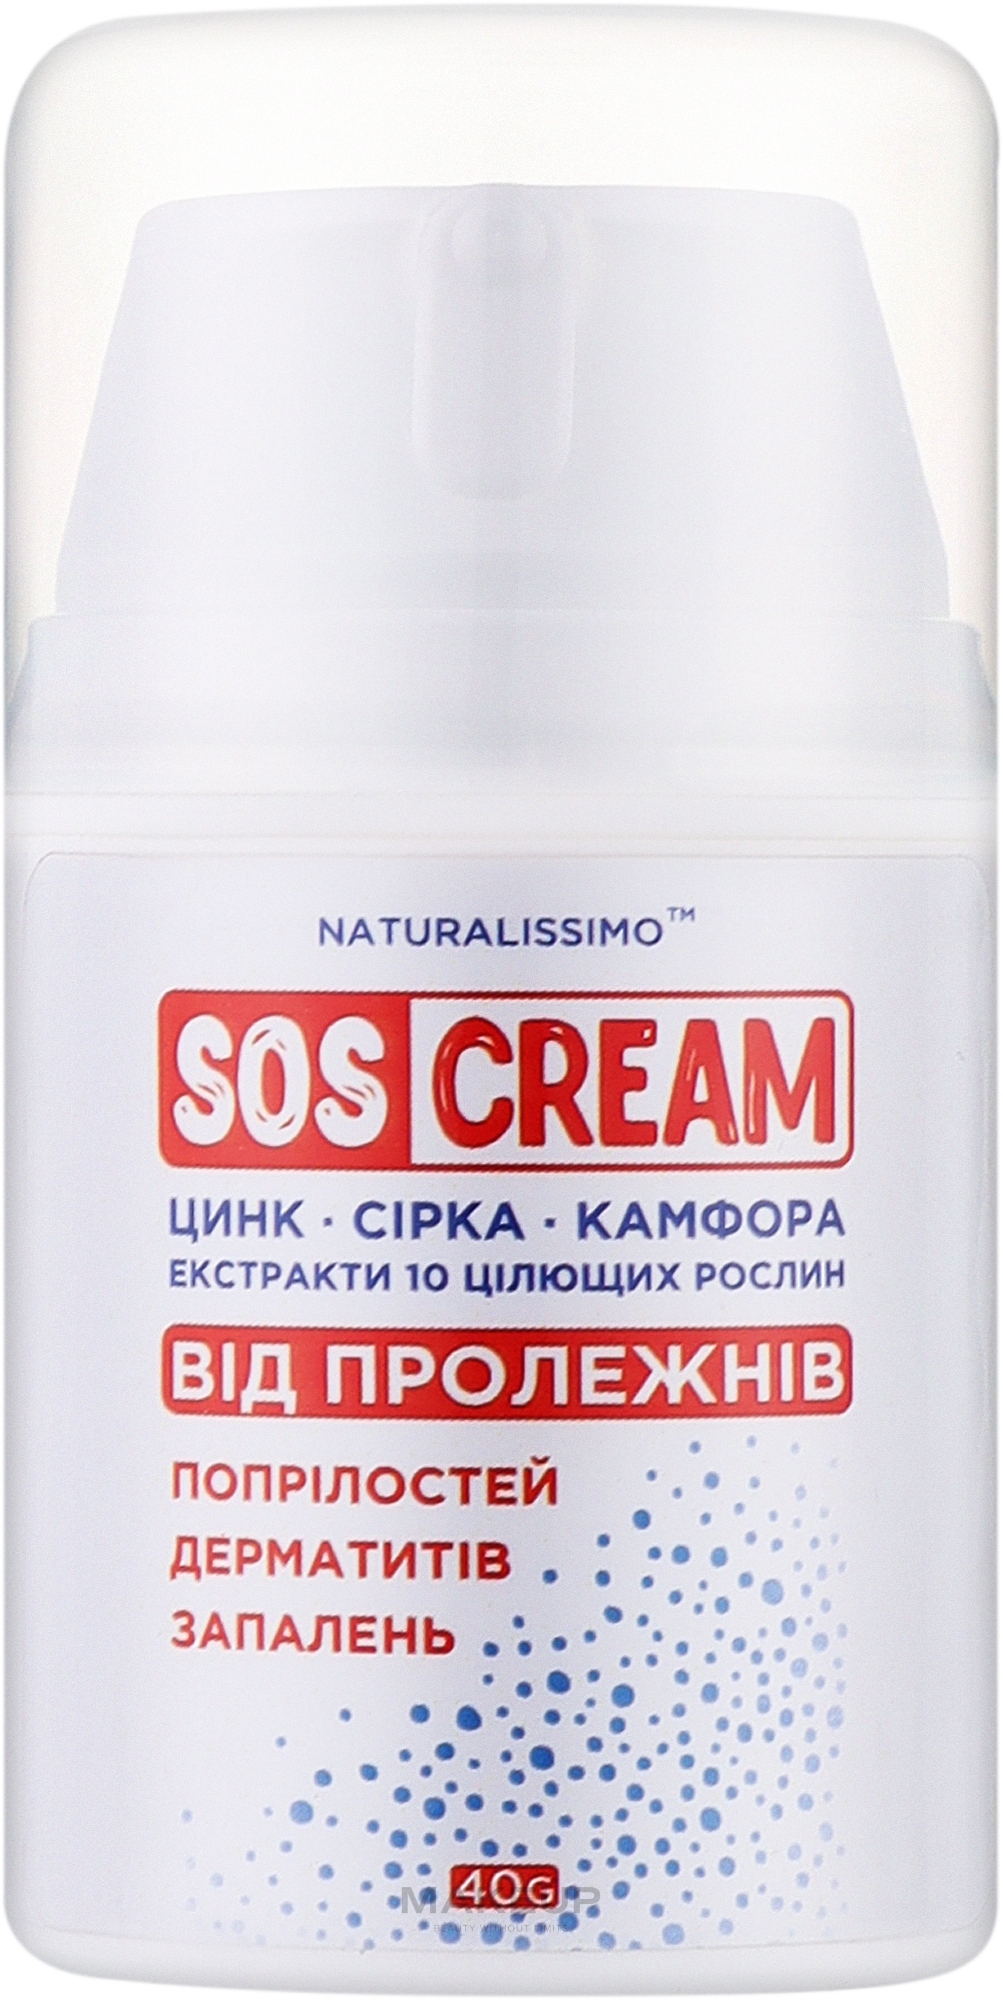 SOS крем от пролежней, опрелостей, дерматита, воспалений - Naturalissimo SOS Cream — фото 40g